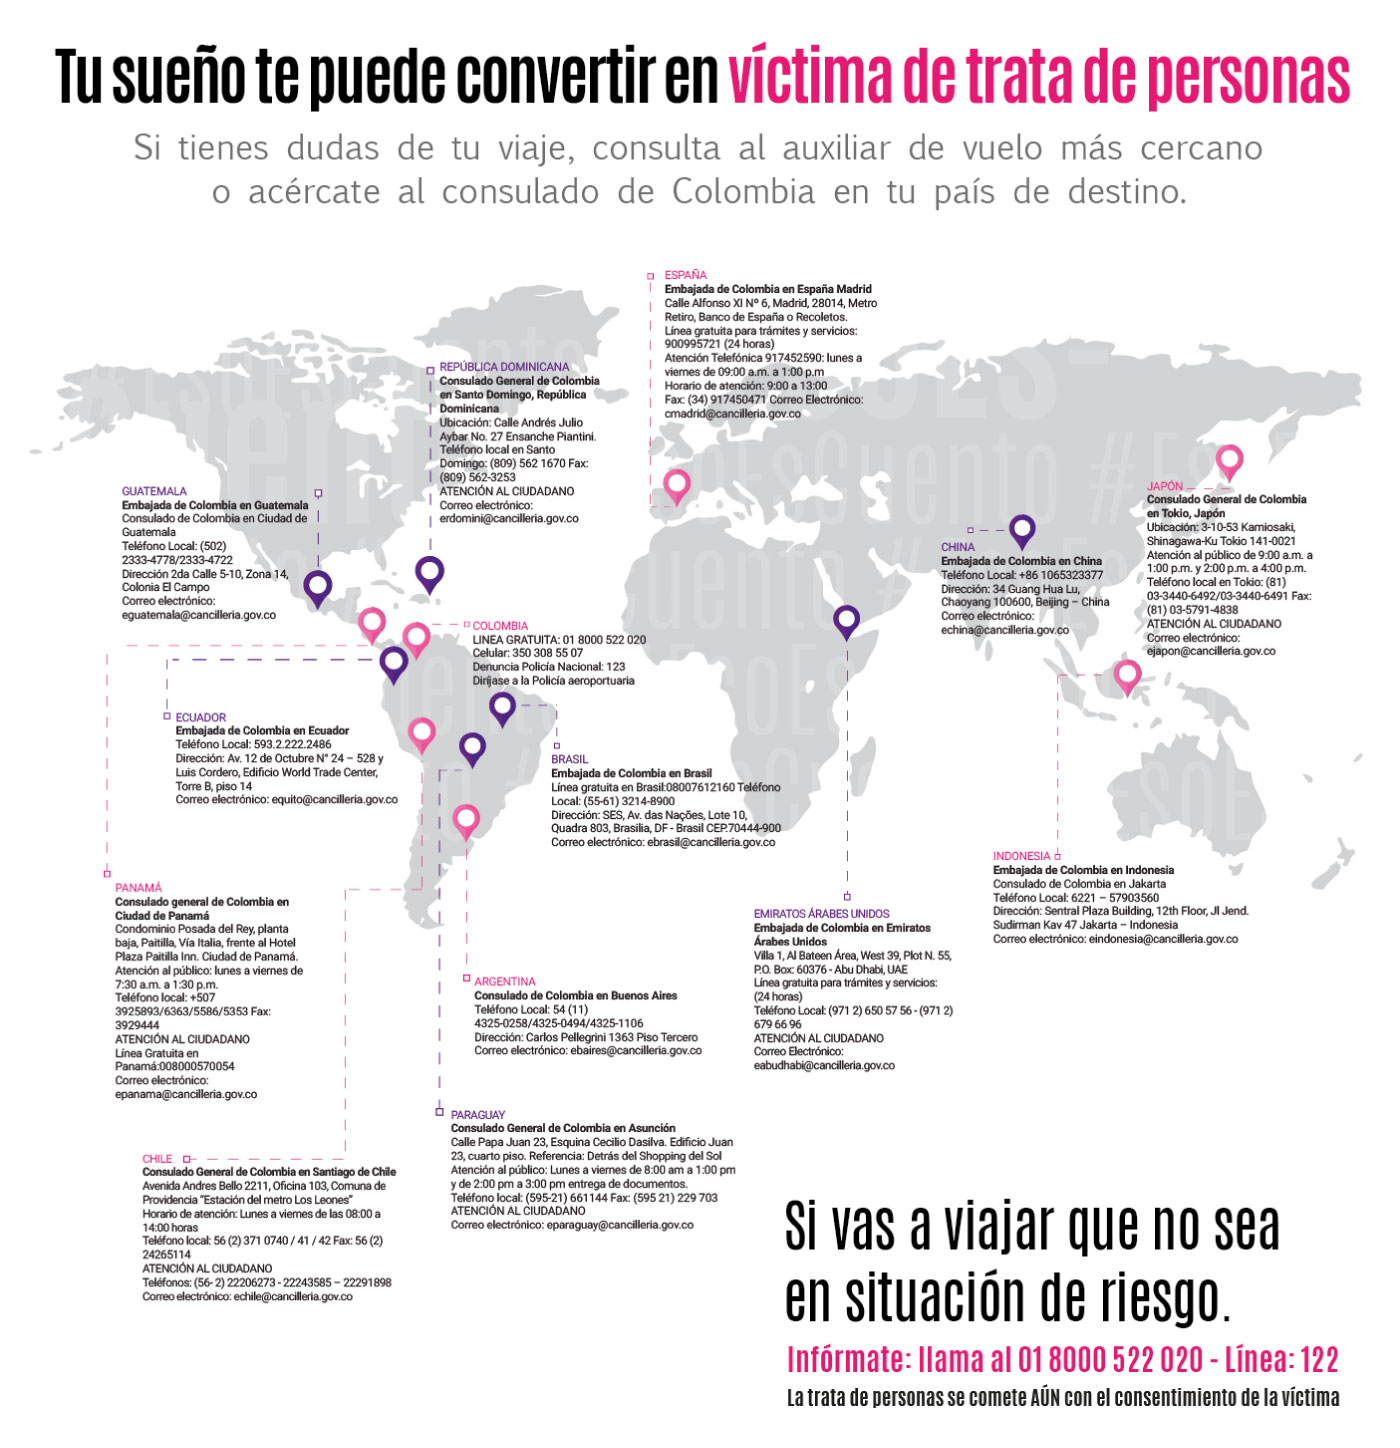 Mapa de consulados de Colombia en el mundo completo